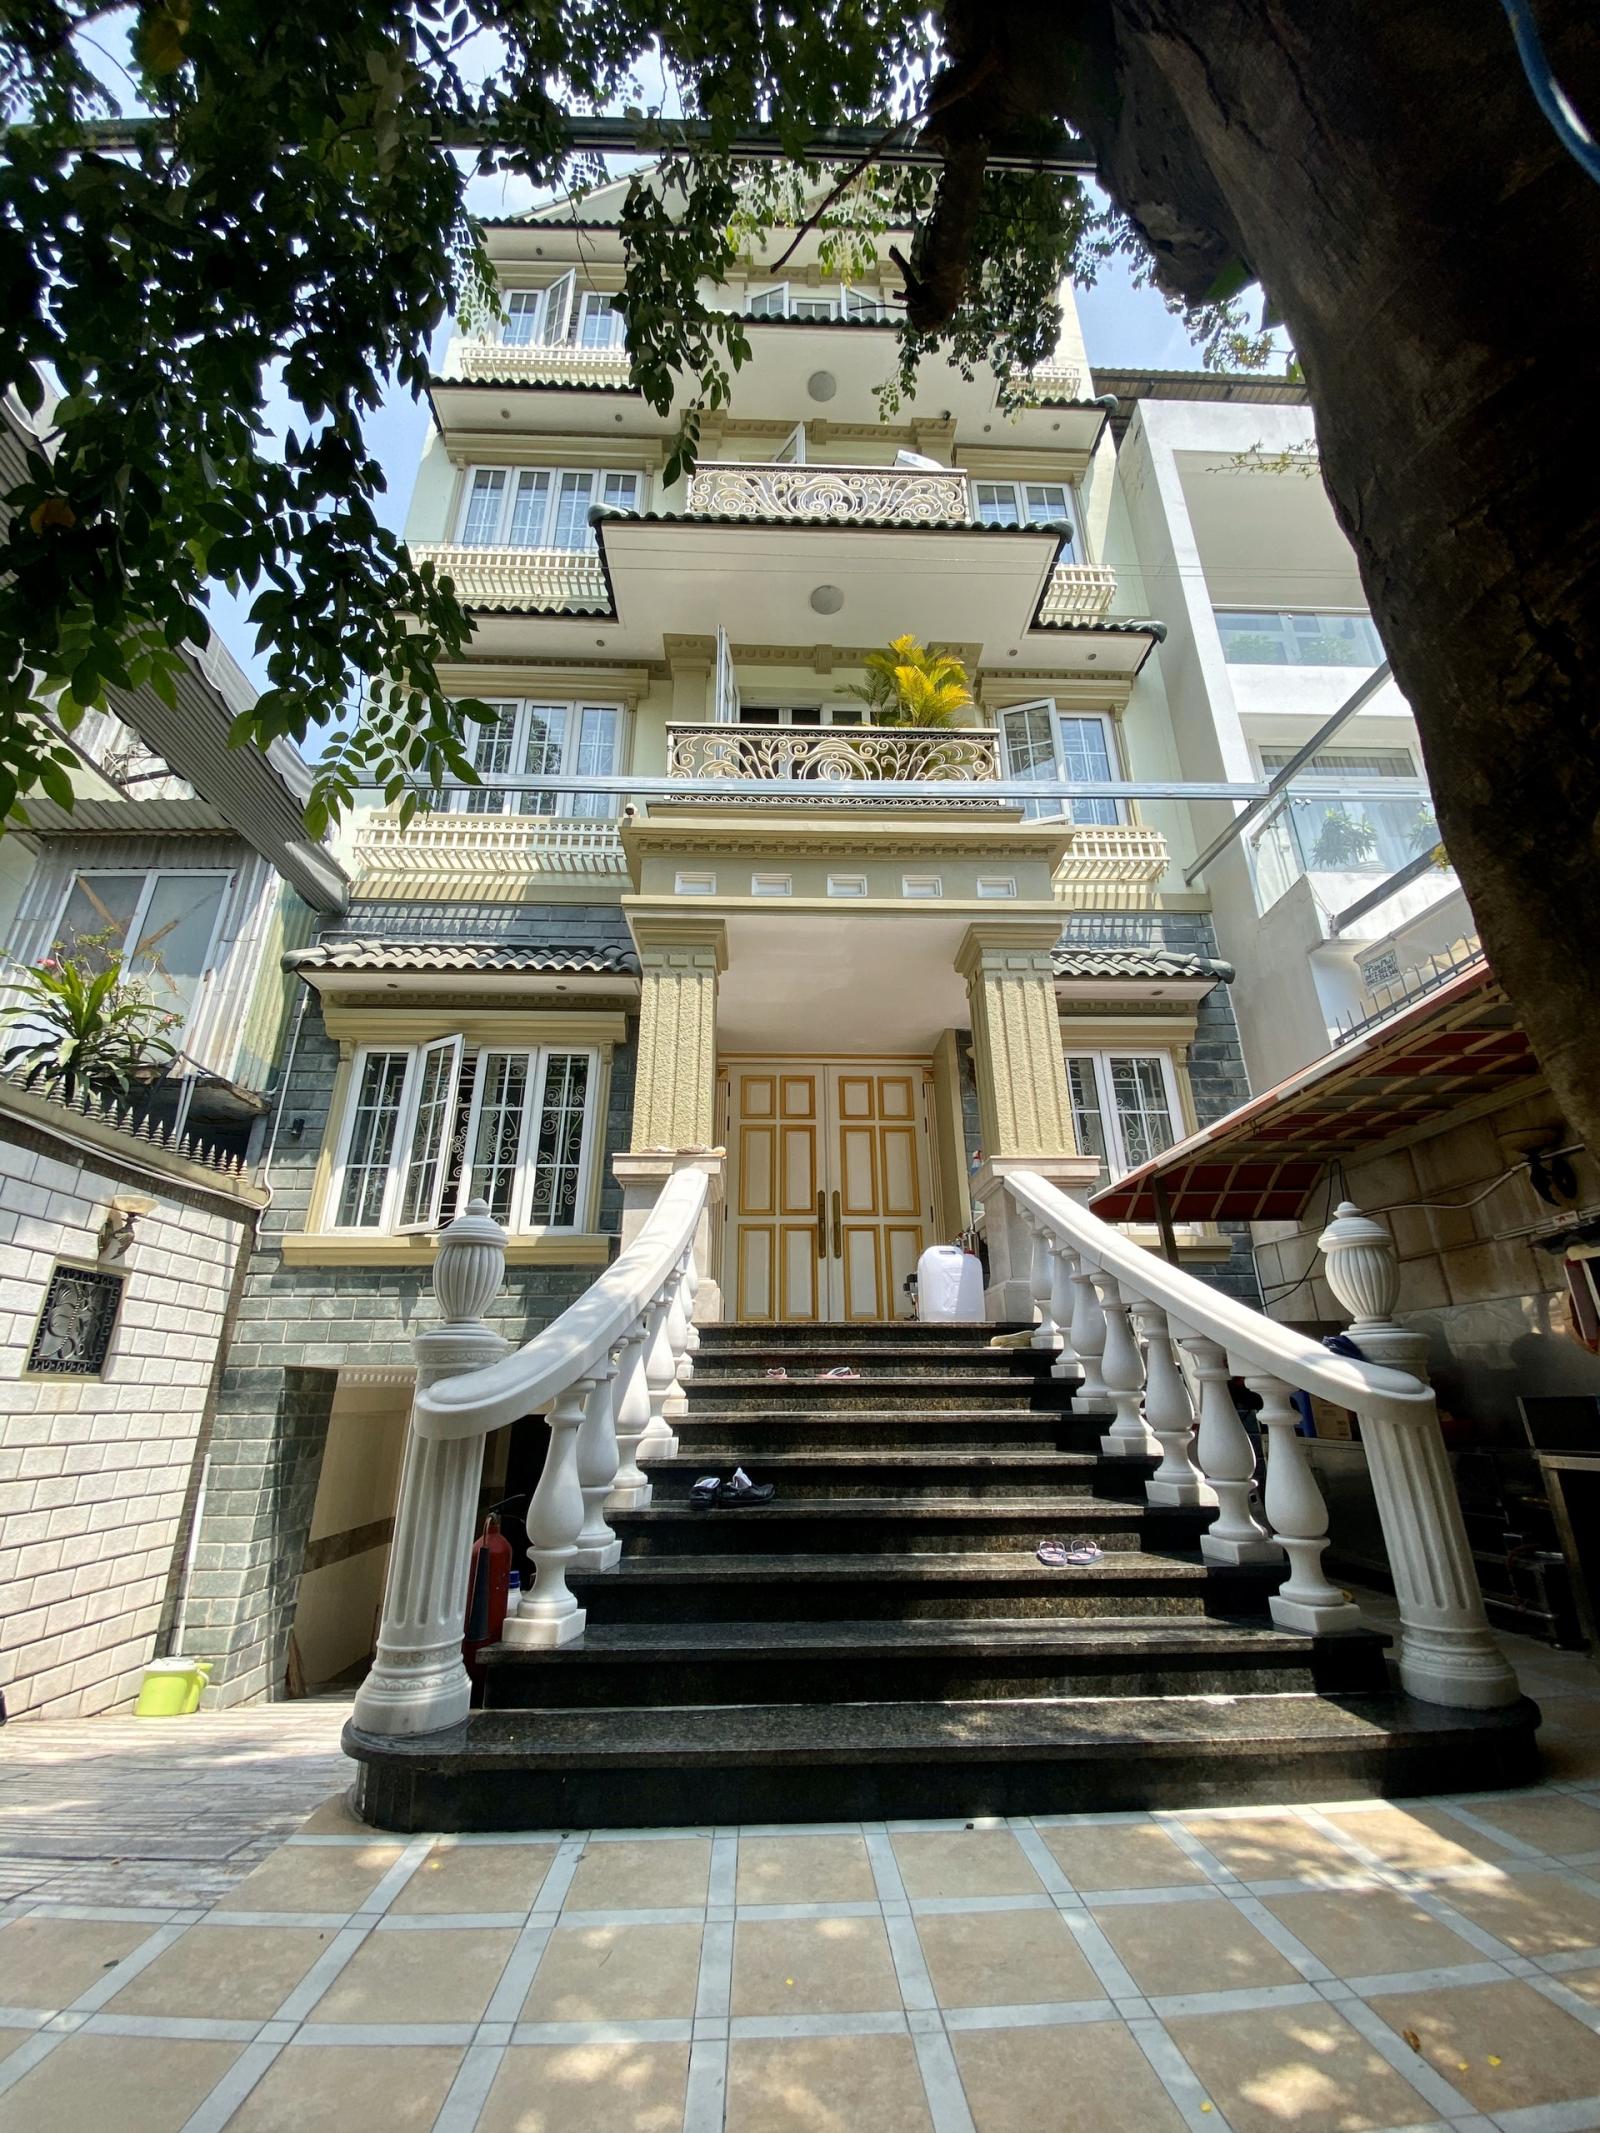 Bán nhà góc 2 mặt tiền rất đẹp đường Nguyễn Minh Hoàng khu vực K300 DT: 8x18m. Nhà 4 tầng mới đẹp